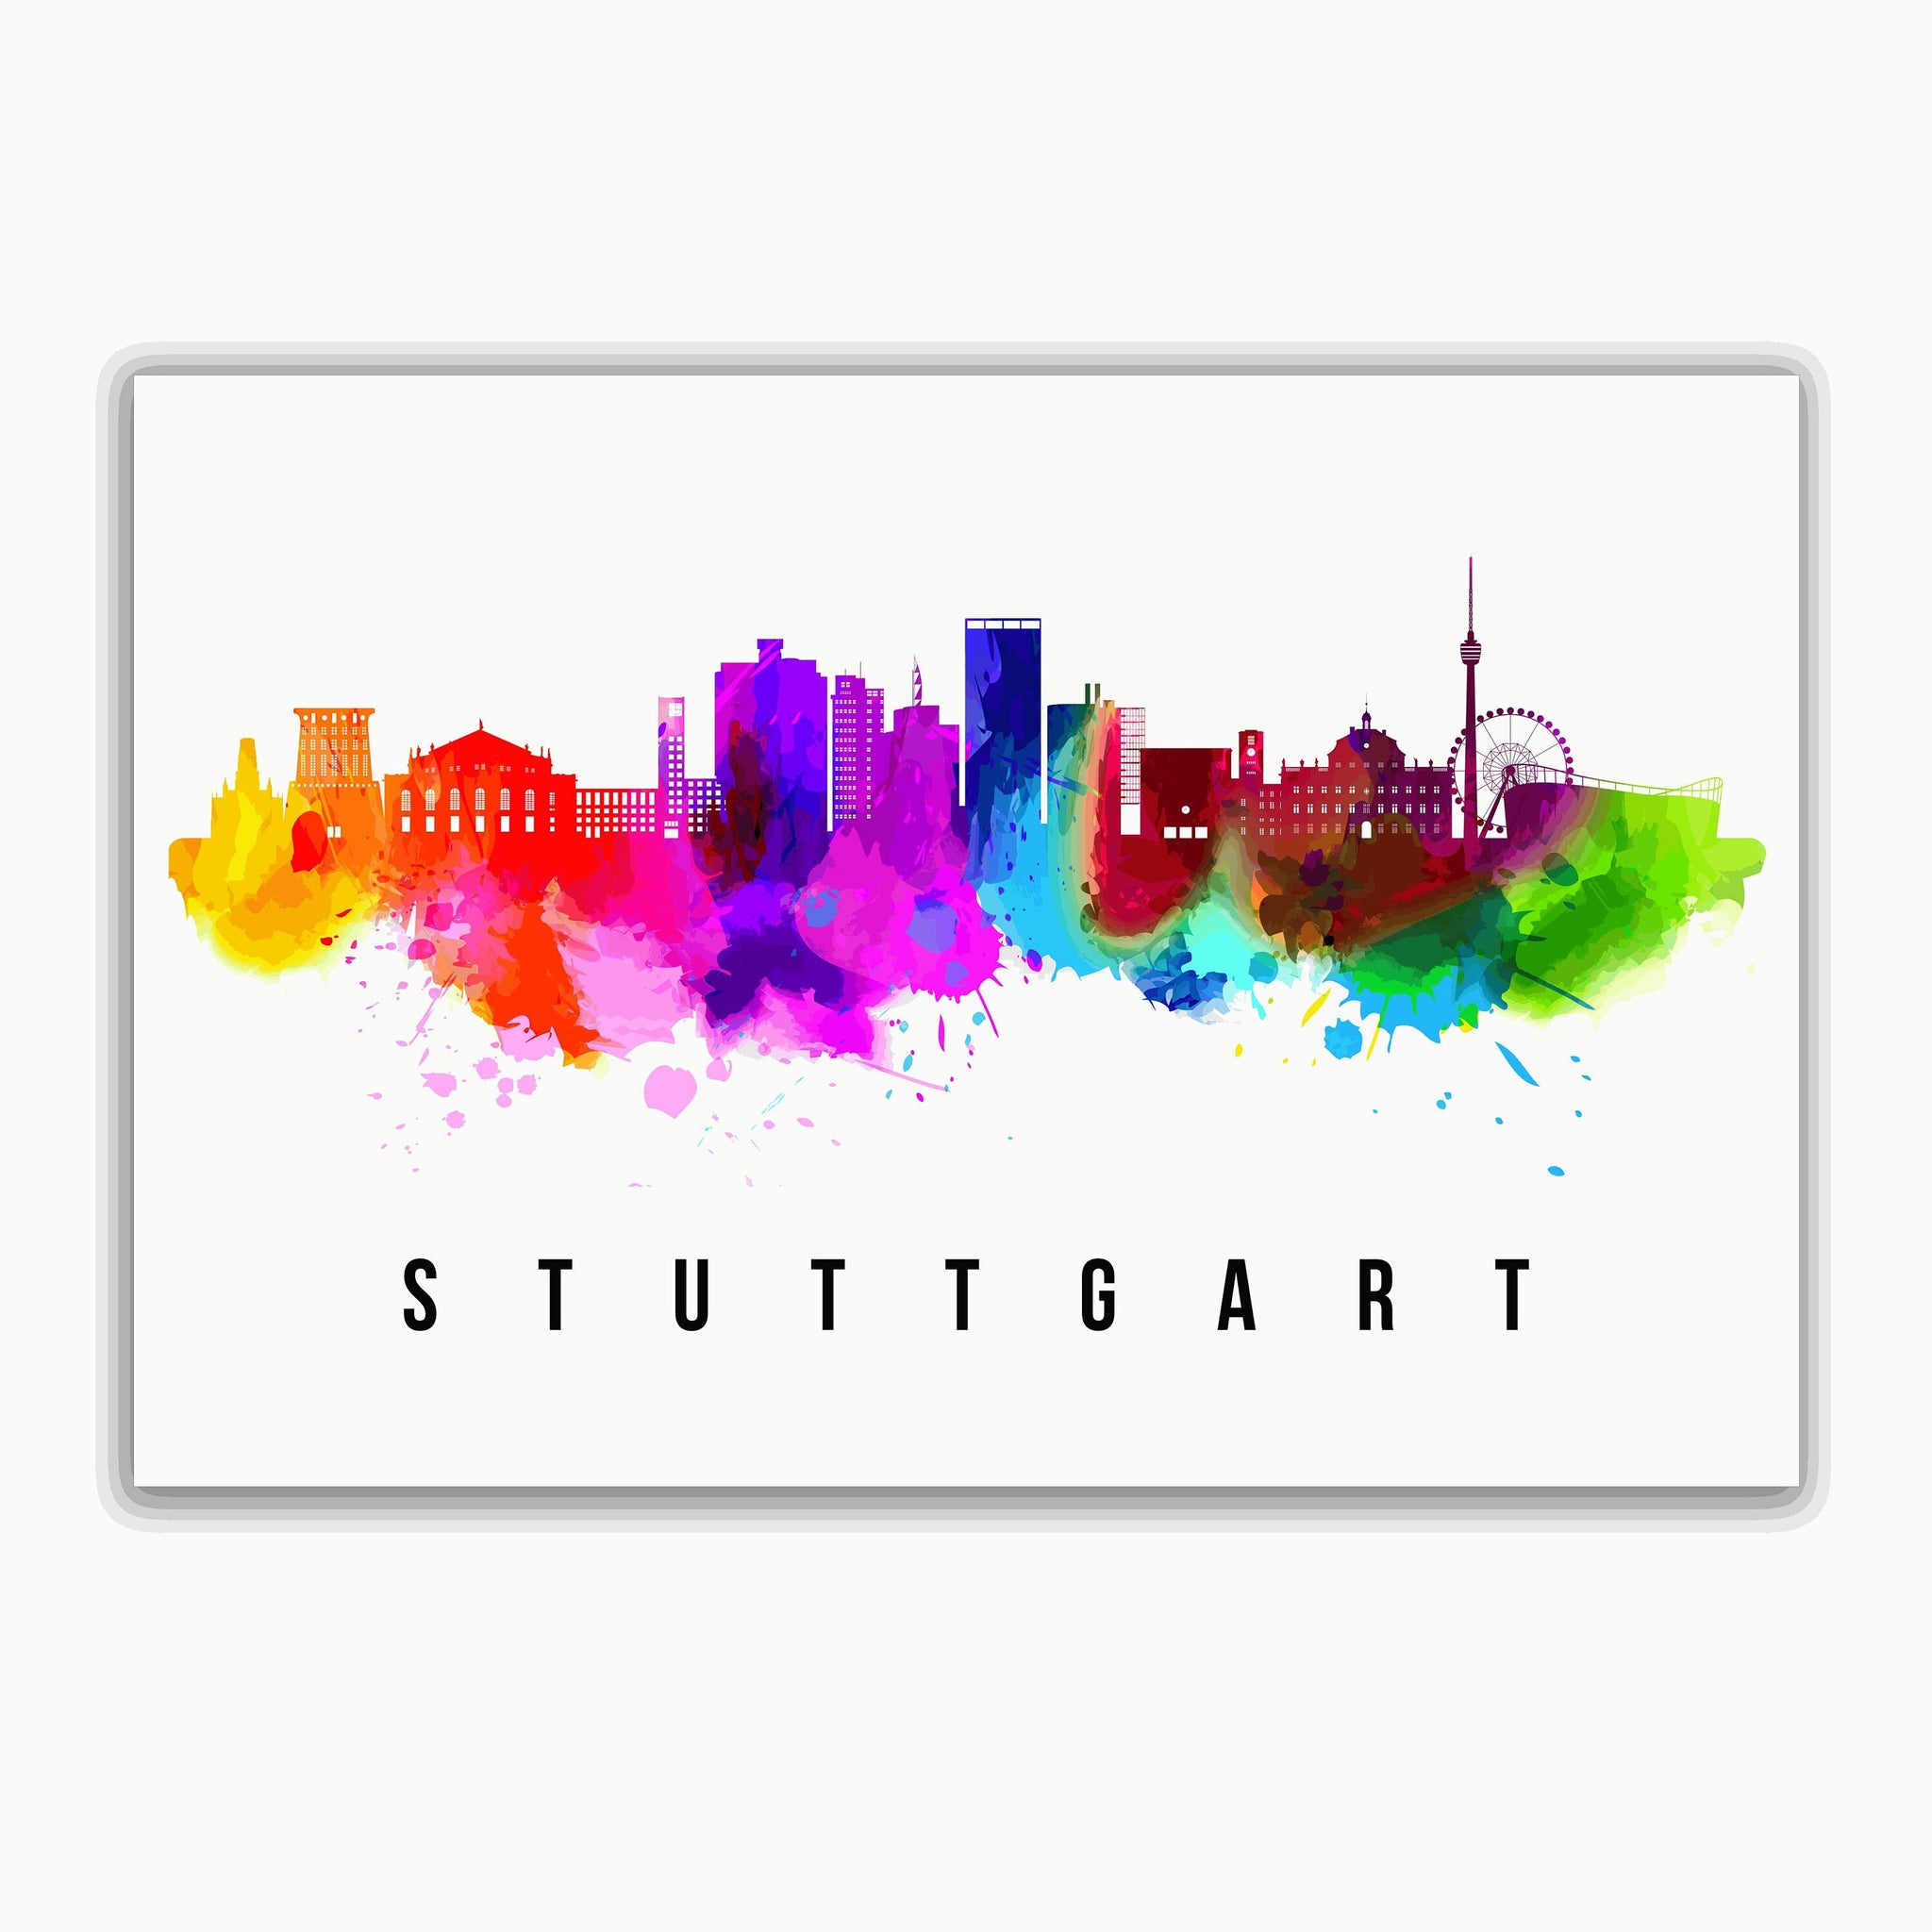 STUTTGART - GERMANY Poster, Skyline Poster Cityscape and Landmark Stuttgart Illustration Home Wall Art, Office Decor